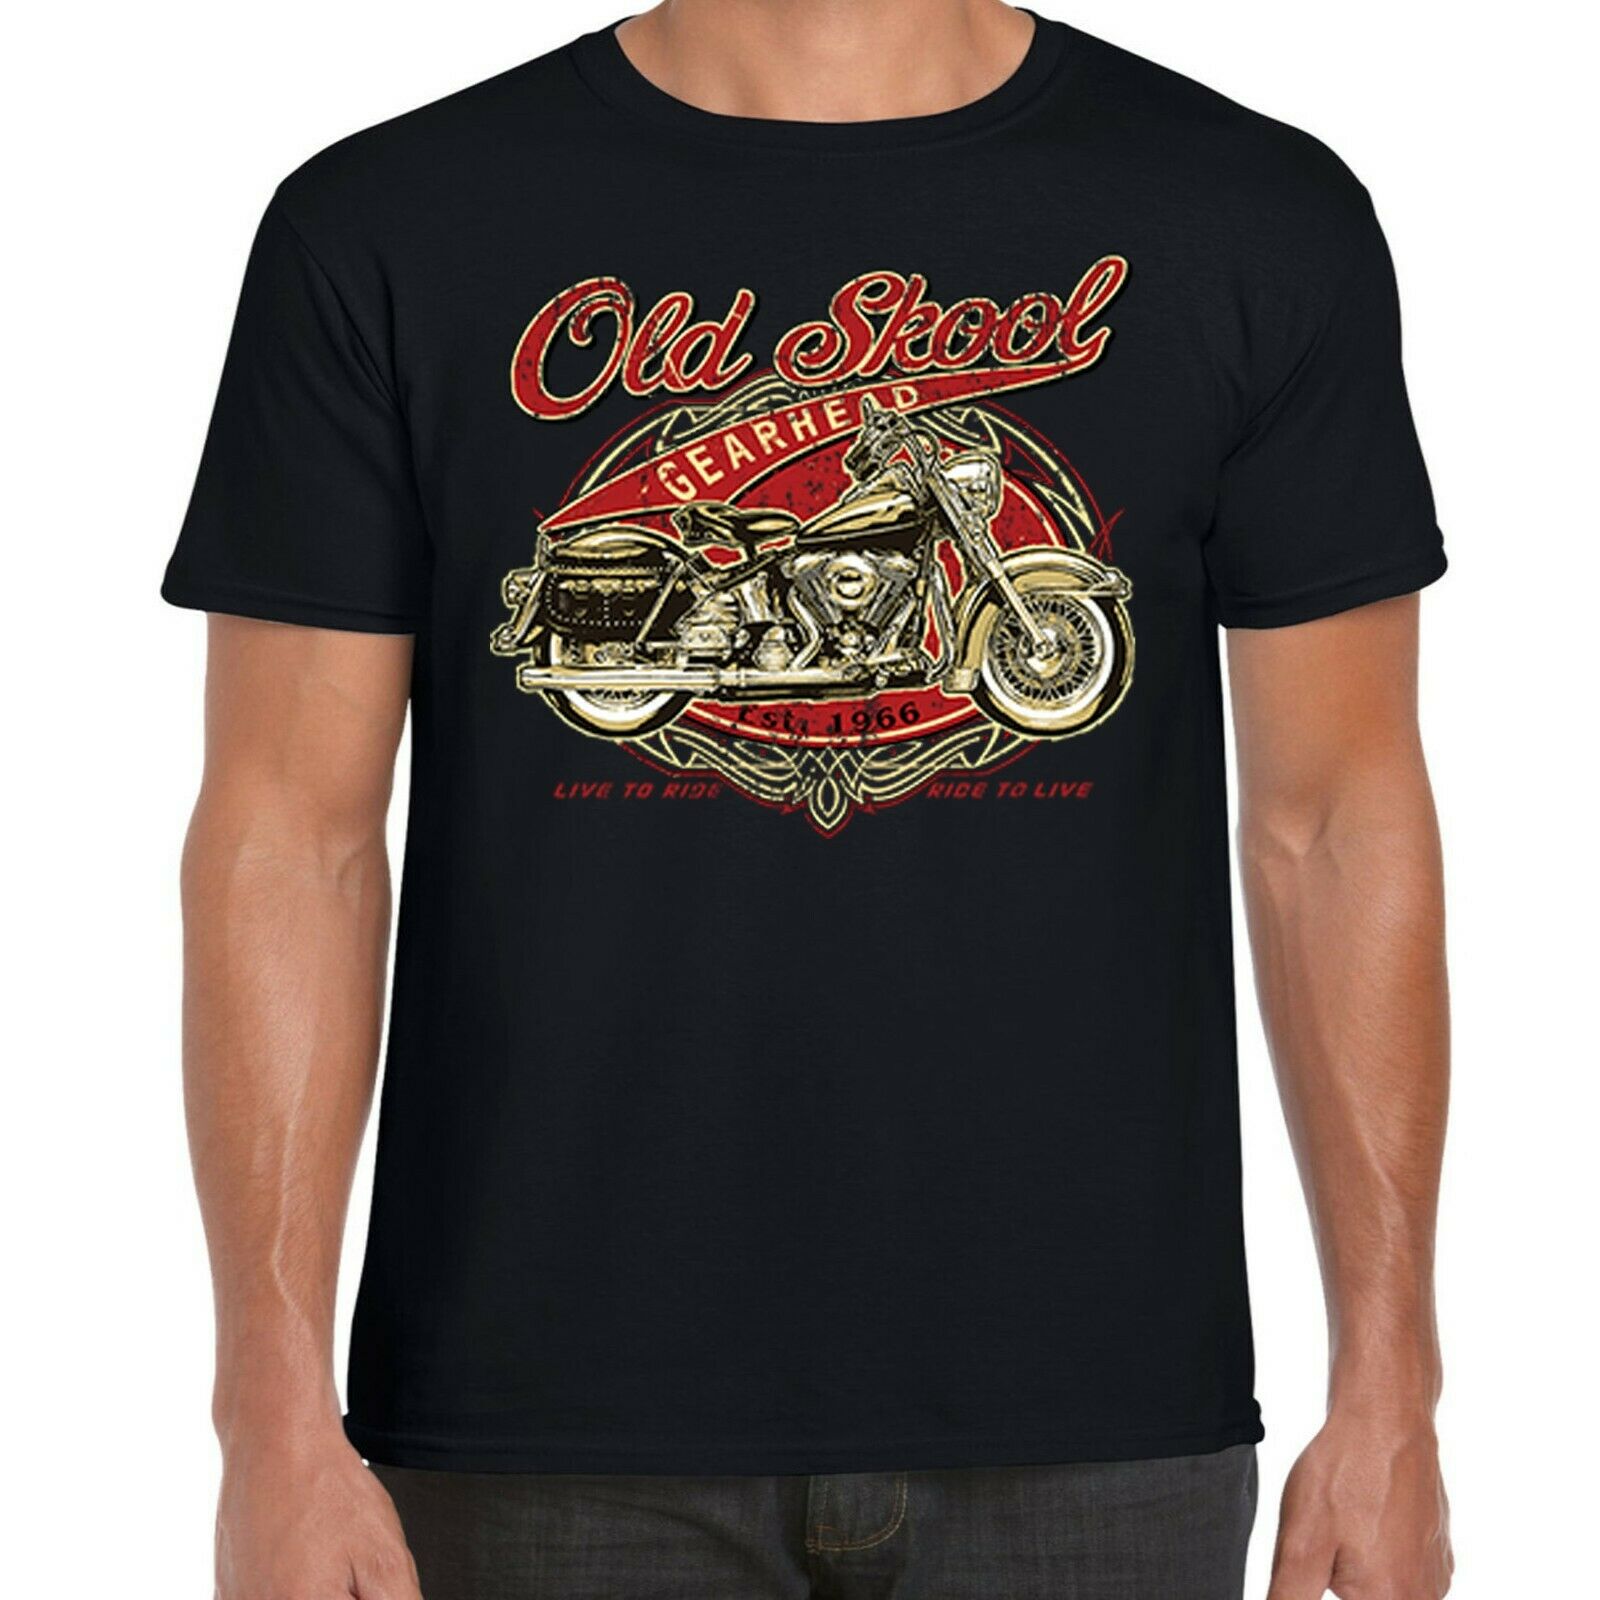 Ratt 'Vintage Ratt Biker' T-Shirt NEW & OFFICIAL! 